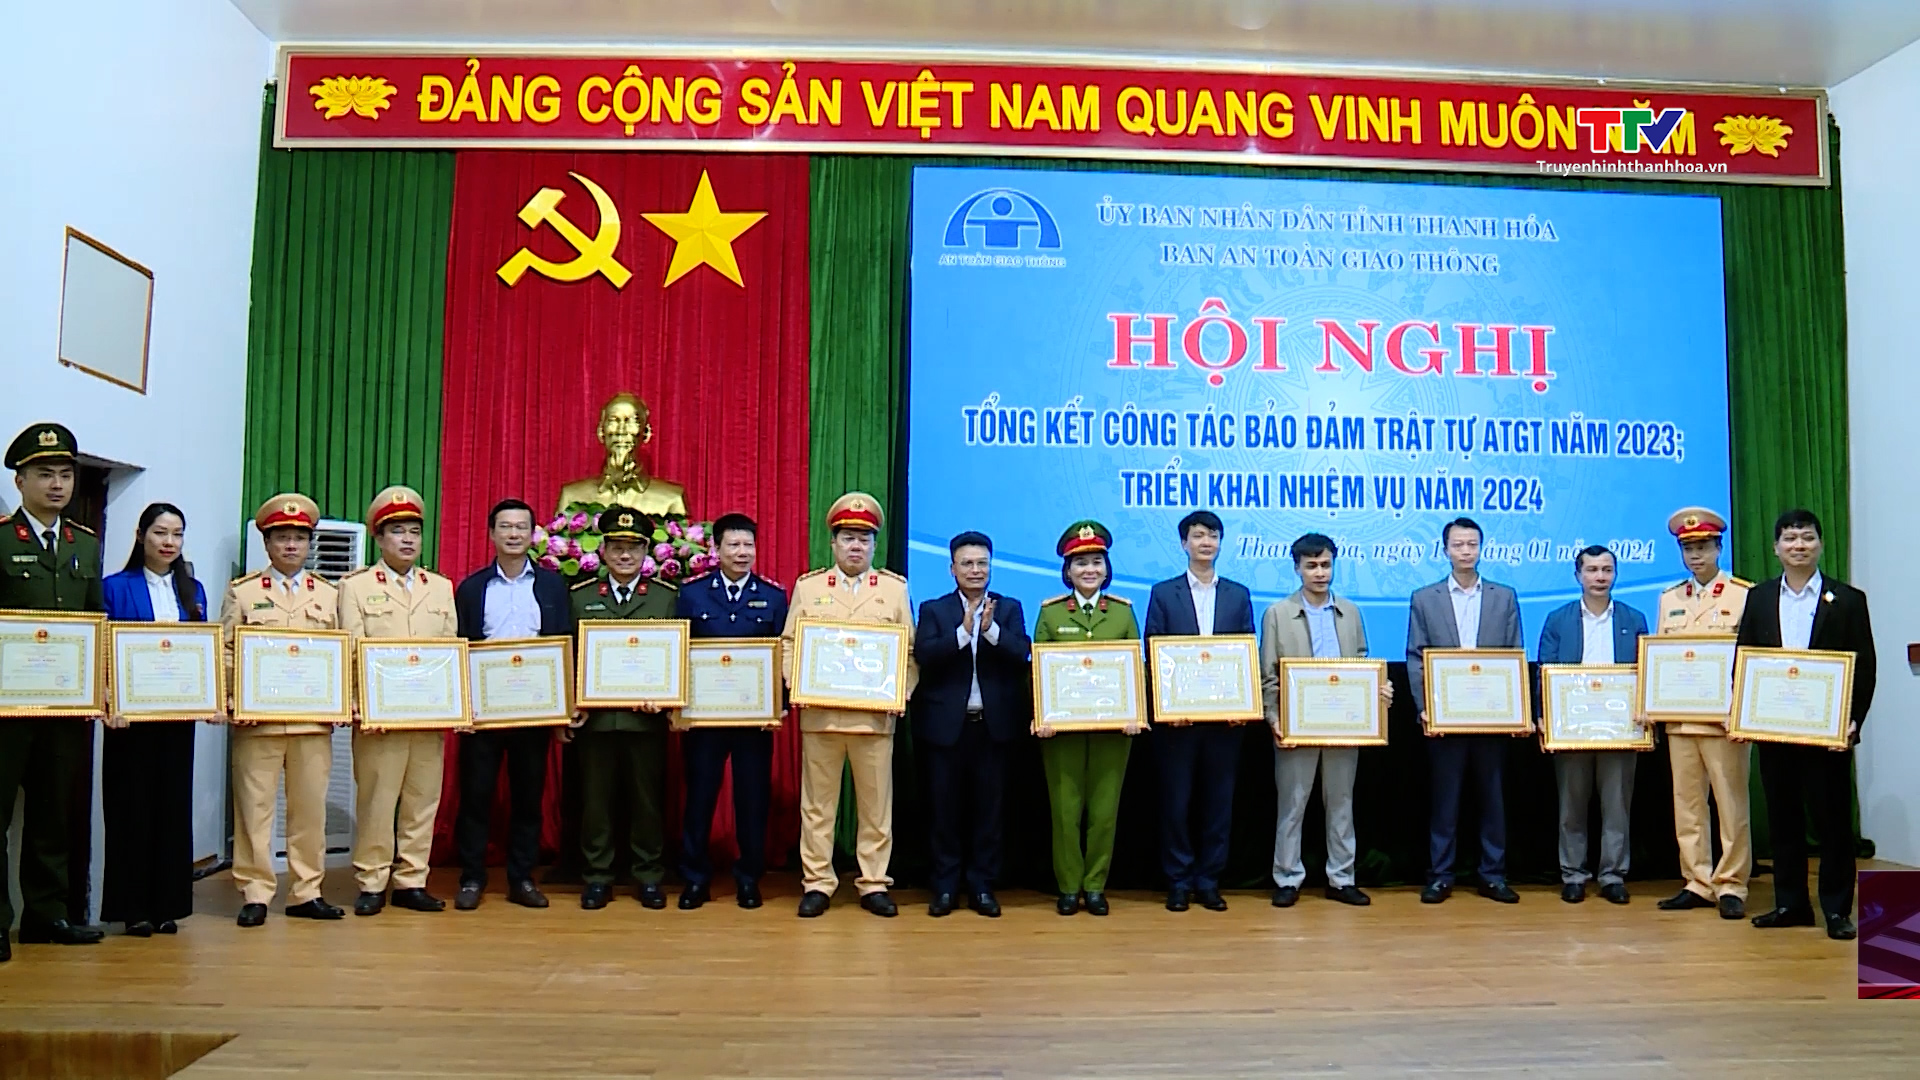 Ban An toàn giao thông tỉnh Thanh Hoá triển khai nhiệm vụ năm 2024- Ảnh 2.